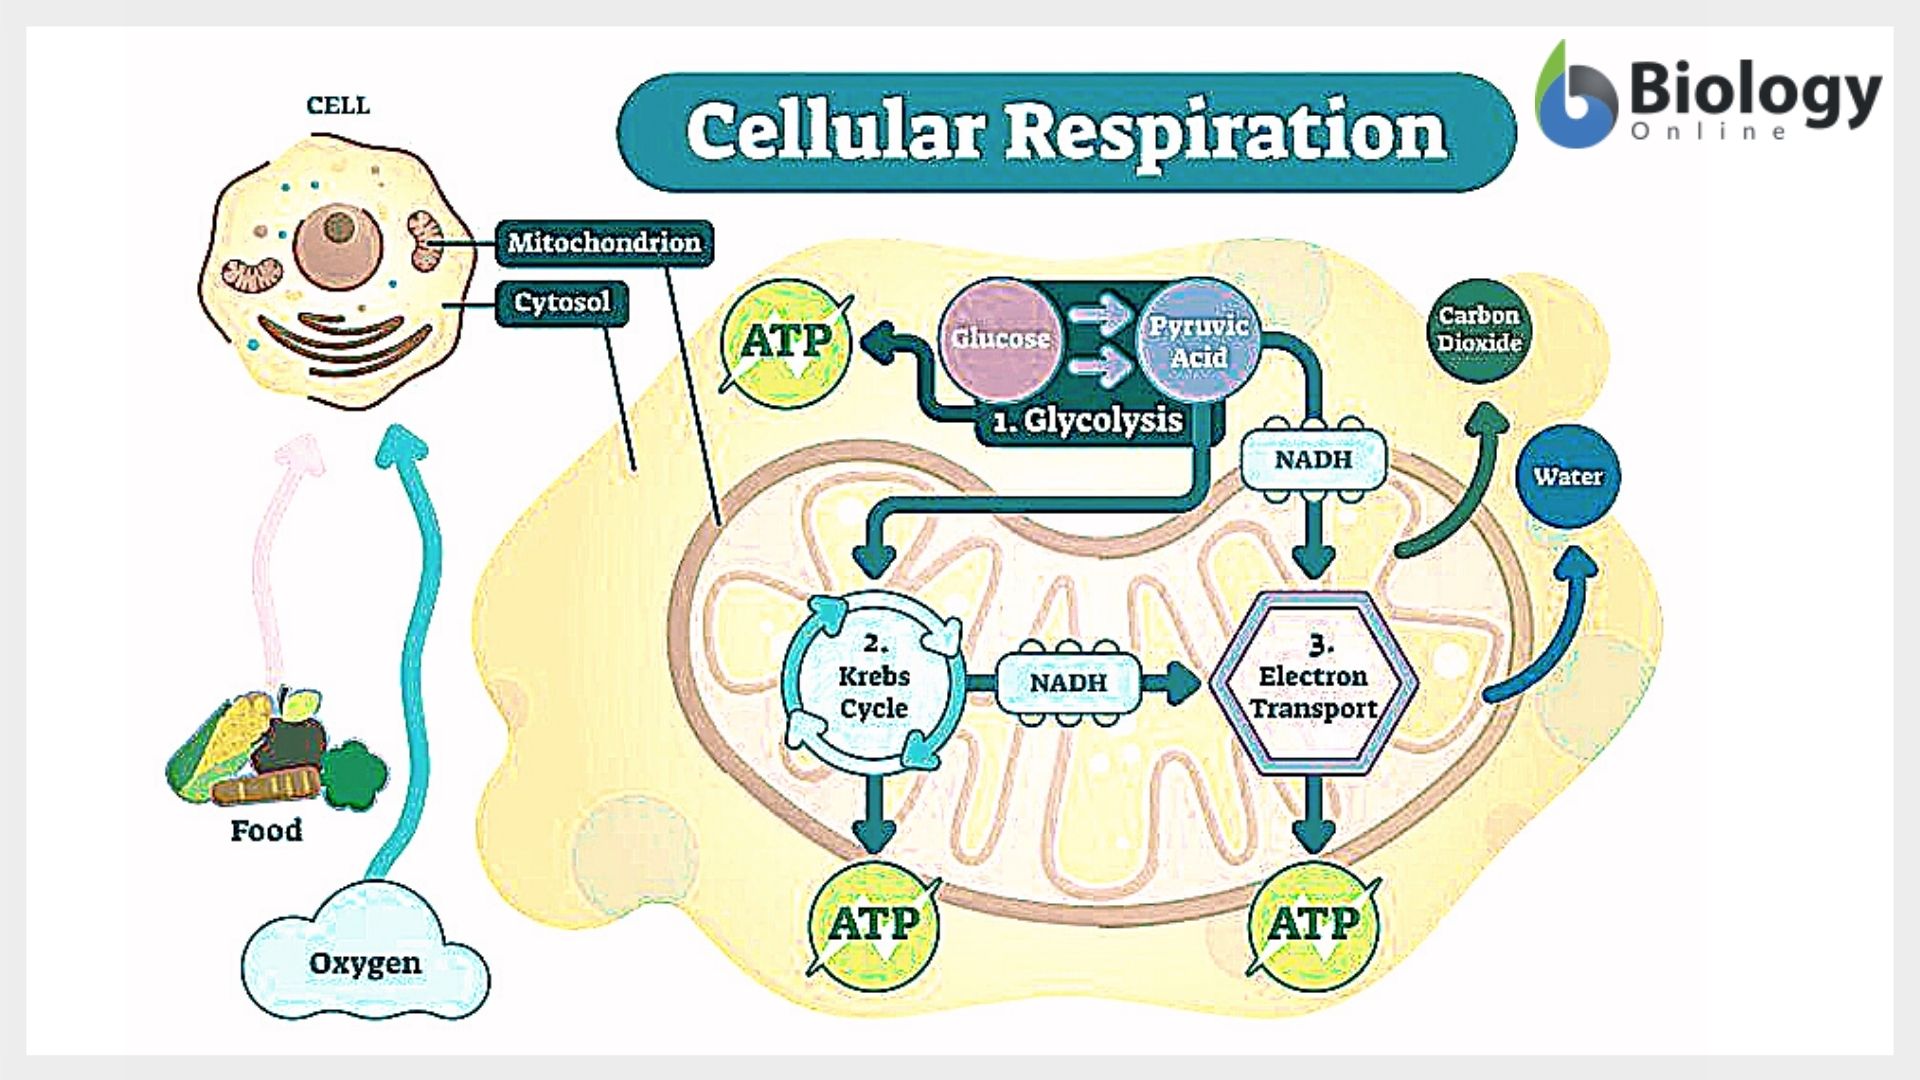 Cellular respiration - Cellular Respiration Definition